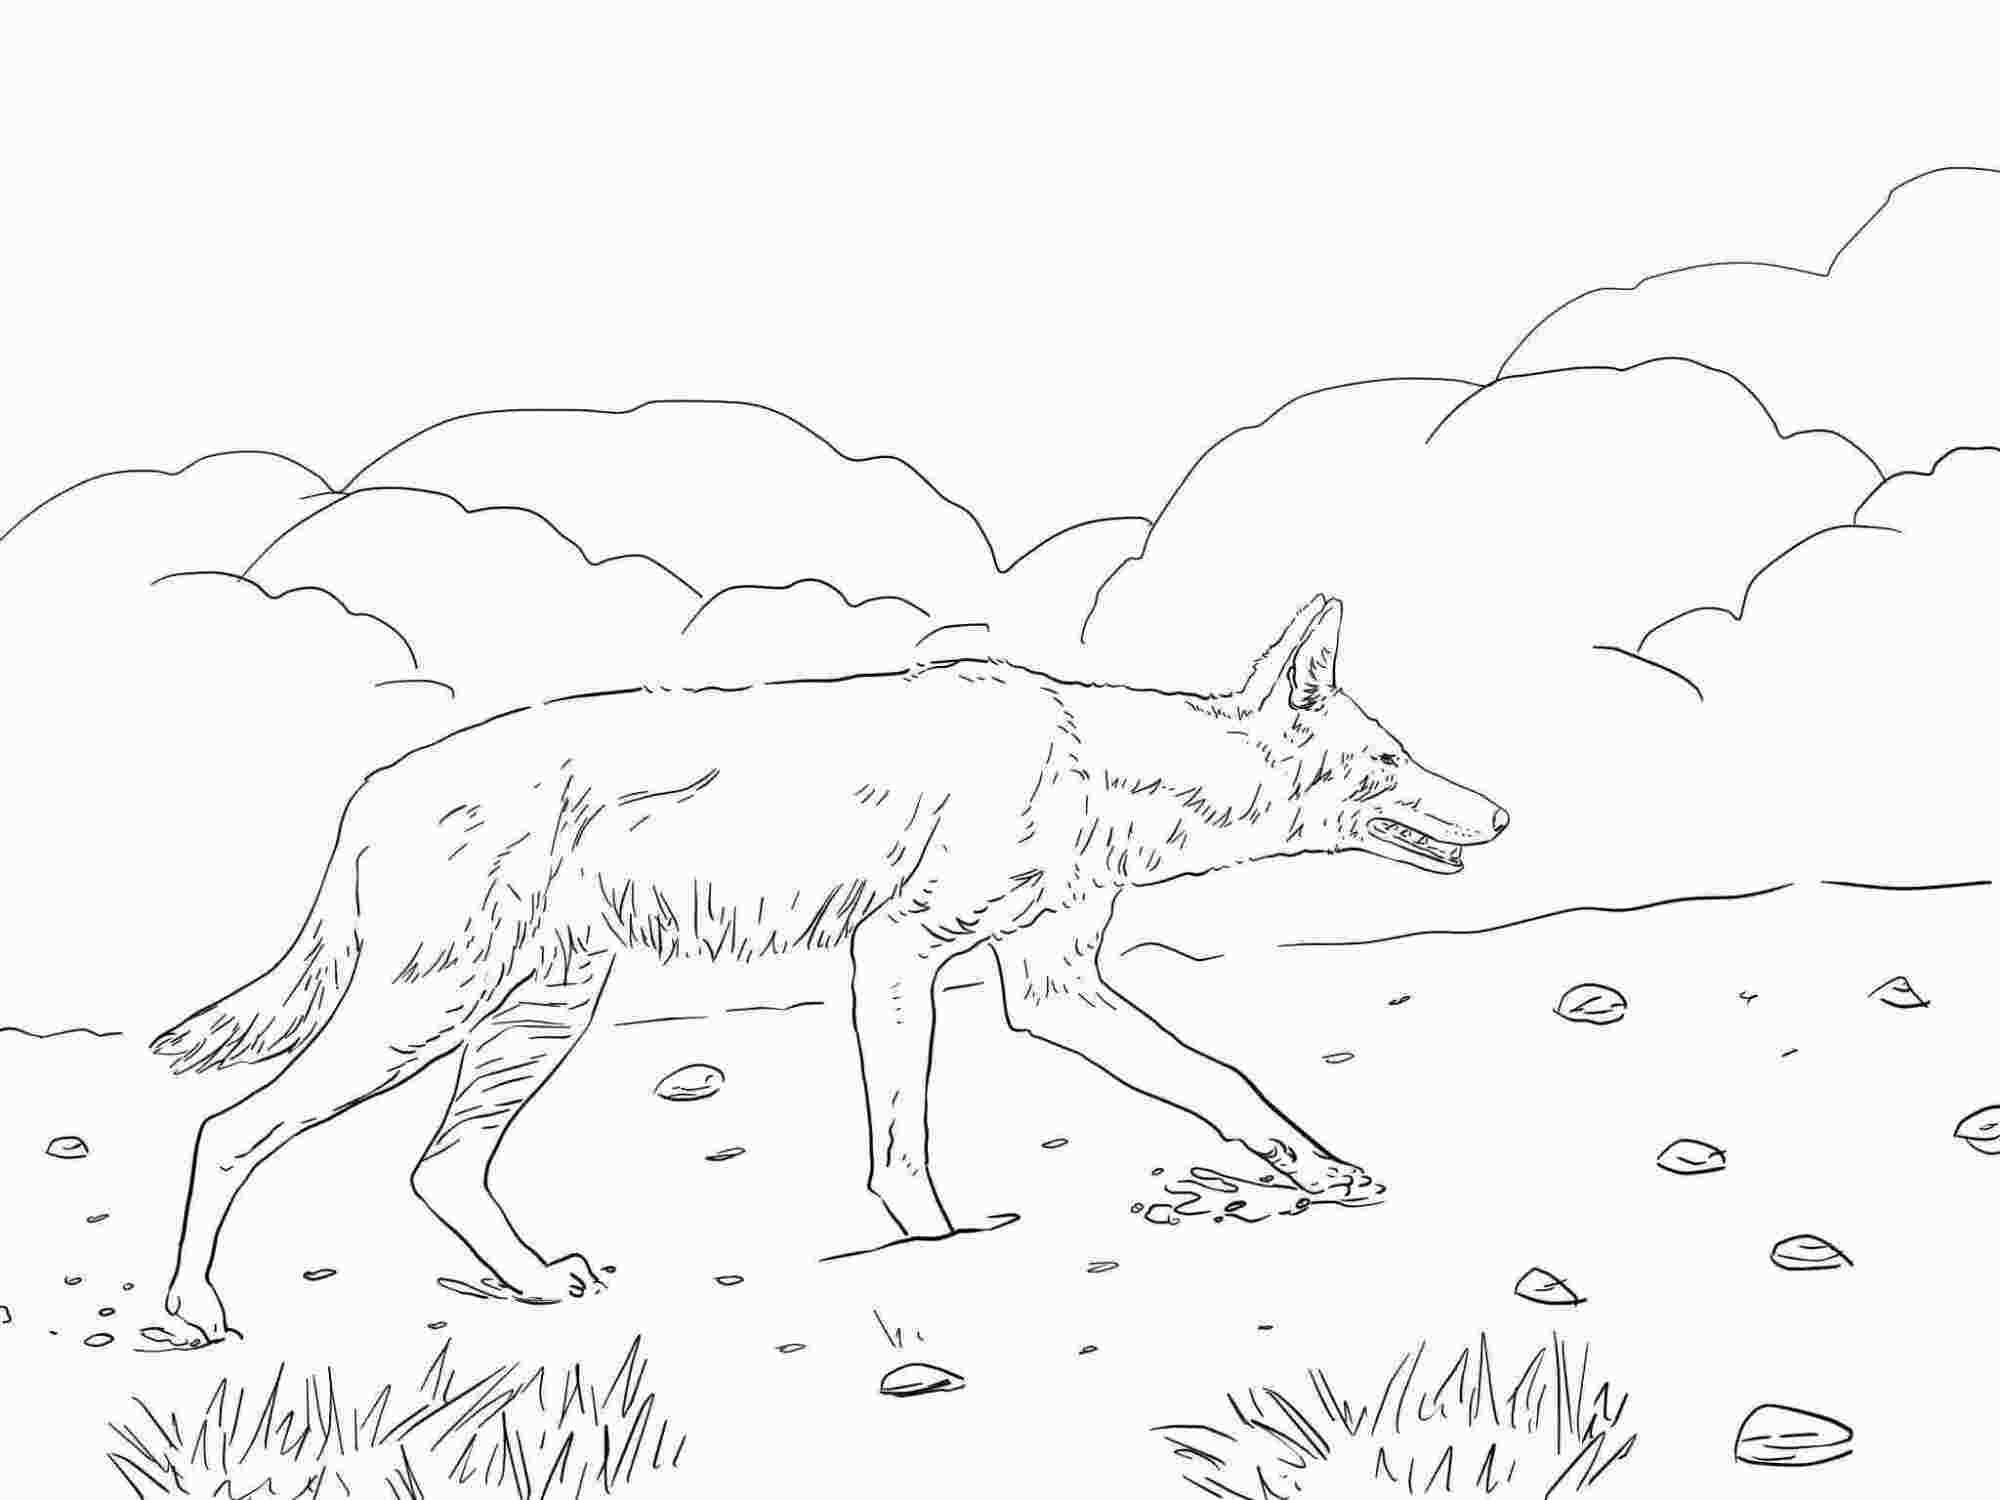 Der afrikanische äthiopische Wolf hat spitze Ohren und eine schlanke Schnauze